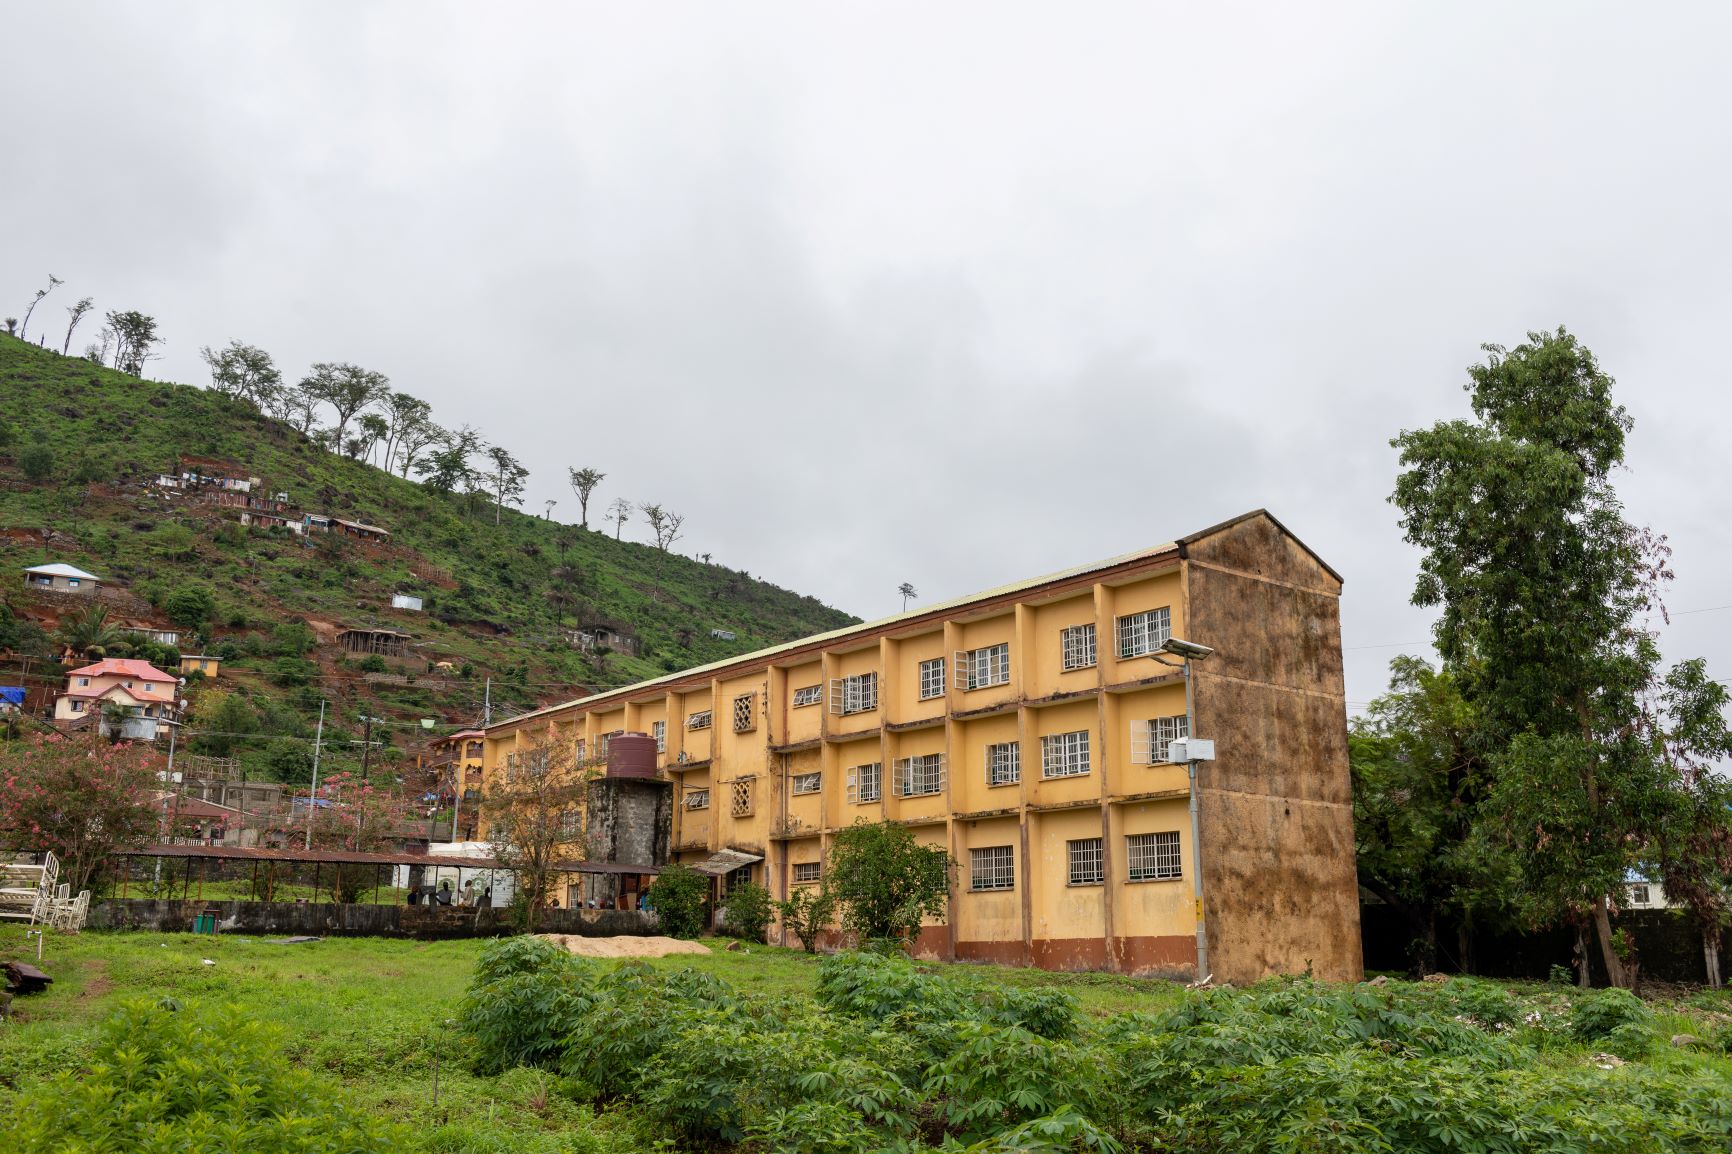 Lakka Hospital in Freetown, Sierra Leone